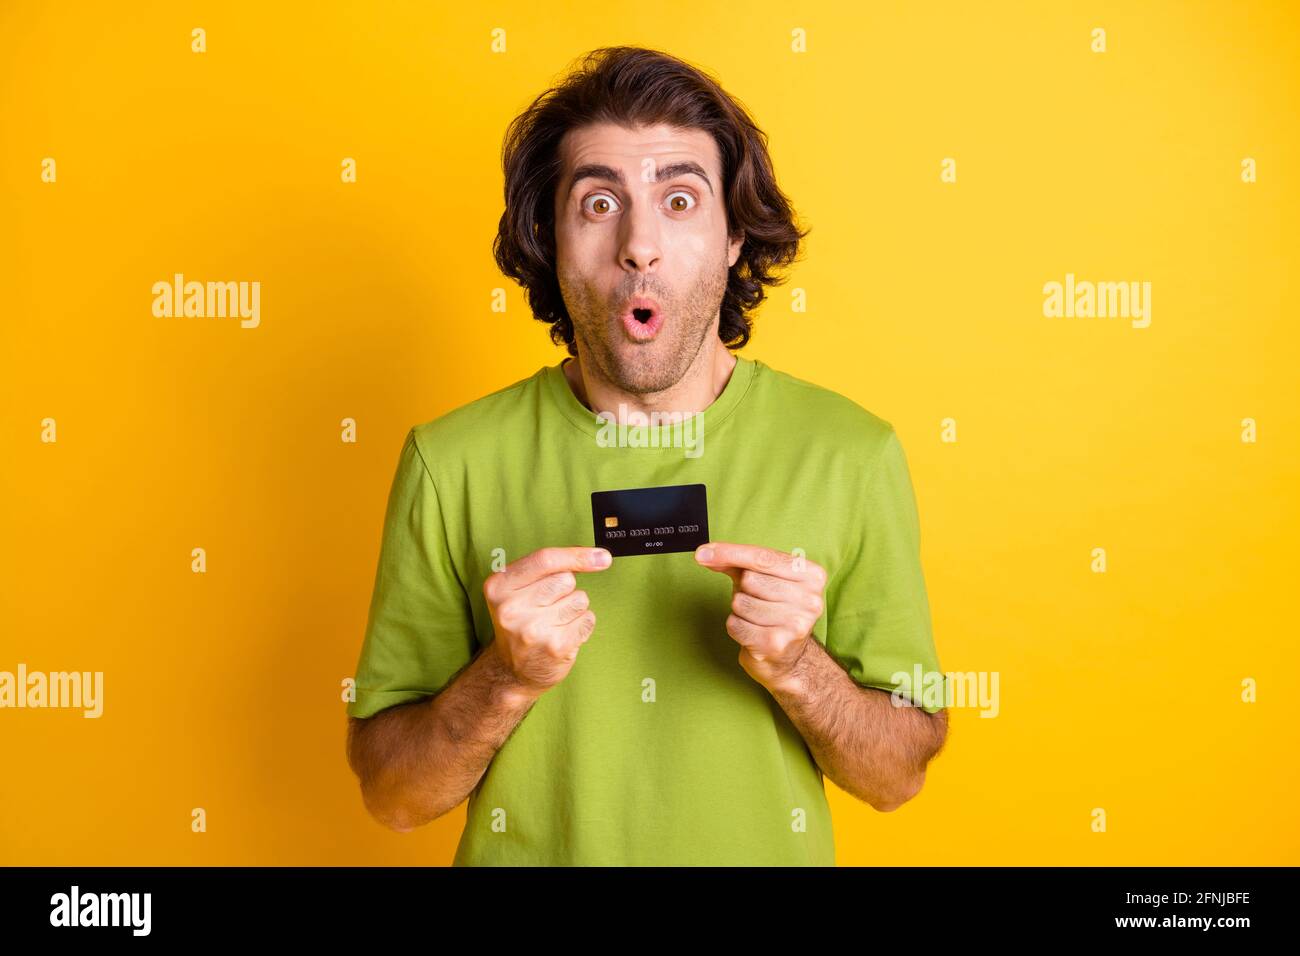 Photo portrait d'un homme choqué faisant la démonstration d'une carte de débit en plastique en train de regarder isolé sur fond jaune vif Banque D'Images